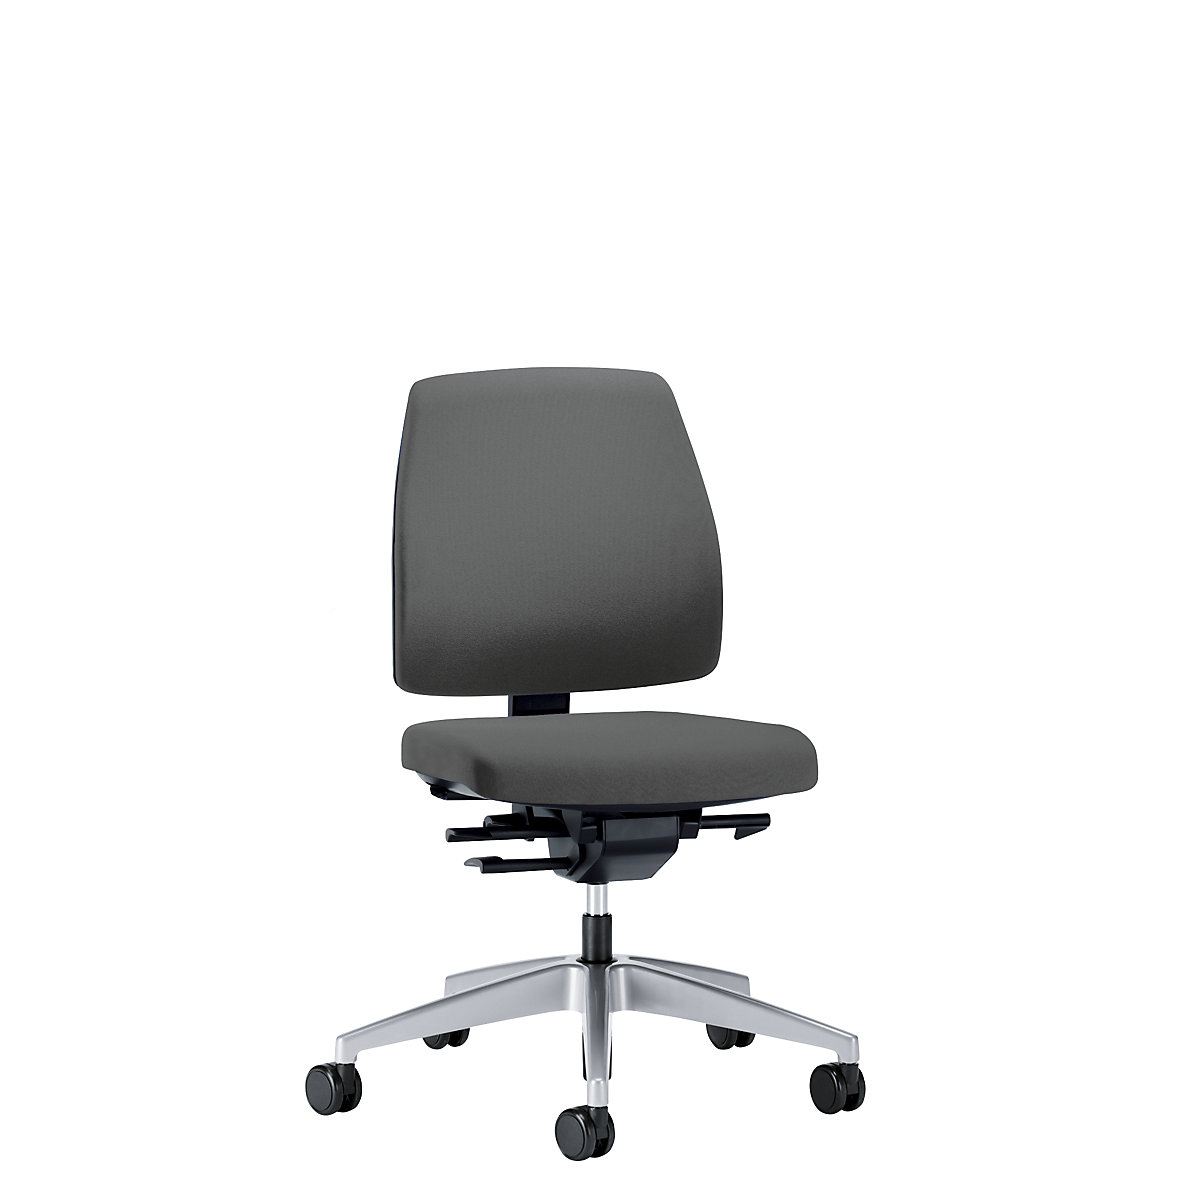 Obrotowe krzesło biurowe GOAL, wys. oparcia 430 mm – interstuhl, szkielet brylantowo-srebrny, z twardymi rolkami, stalowo-szary, głęb. siedziska 410 mm-2